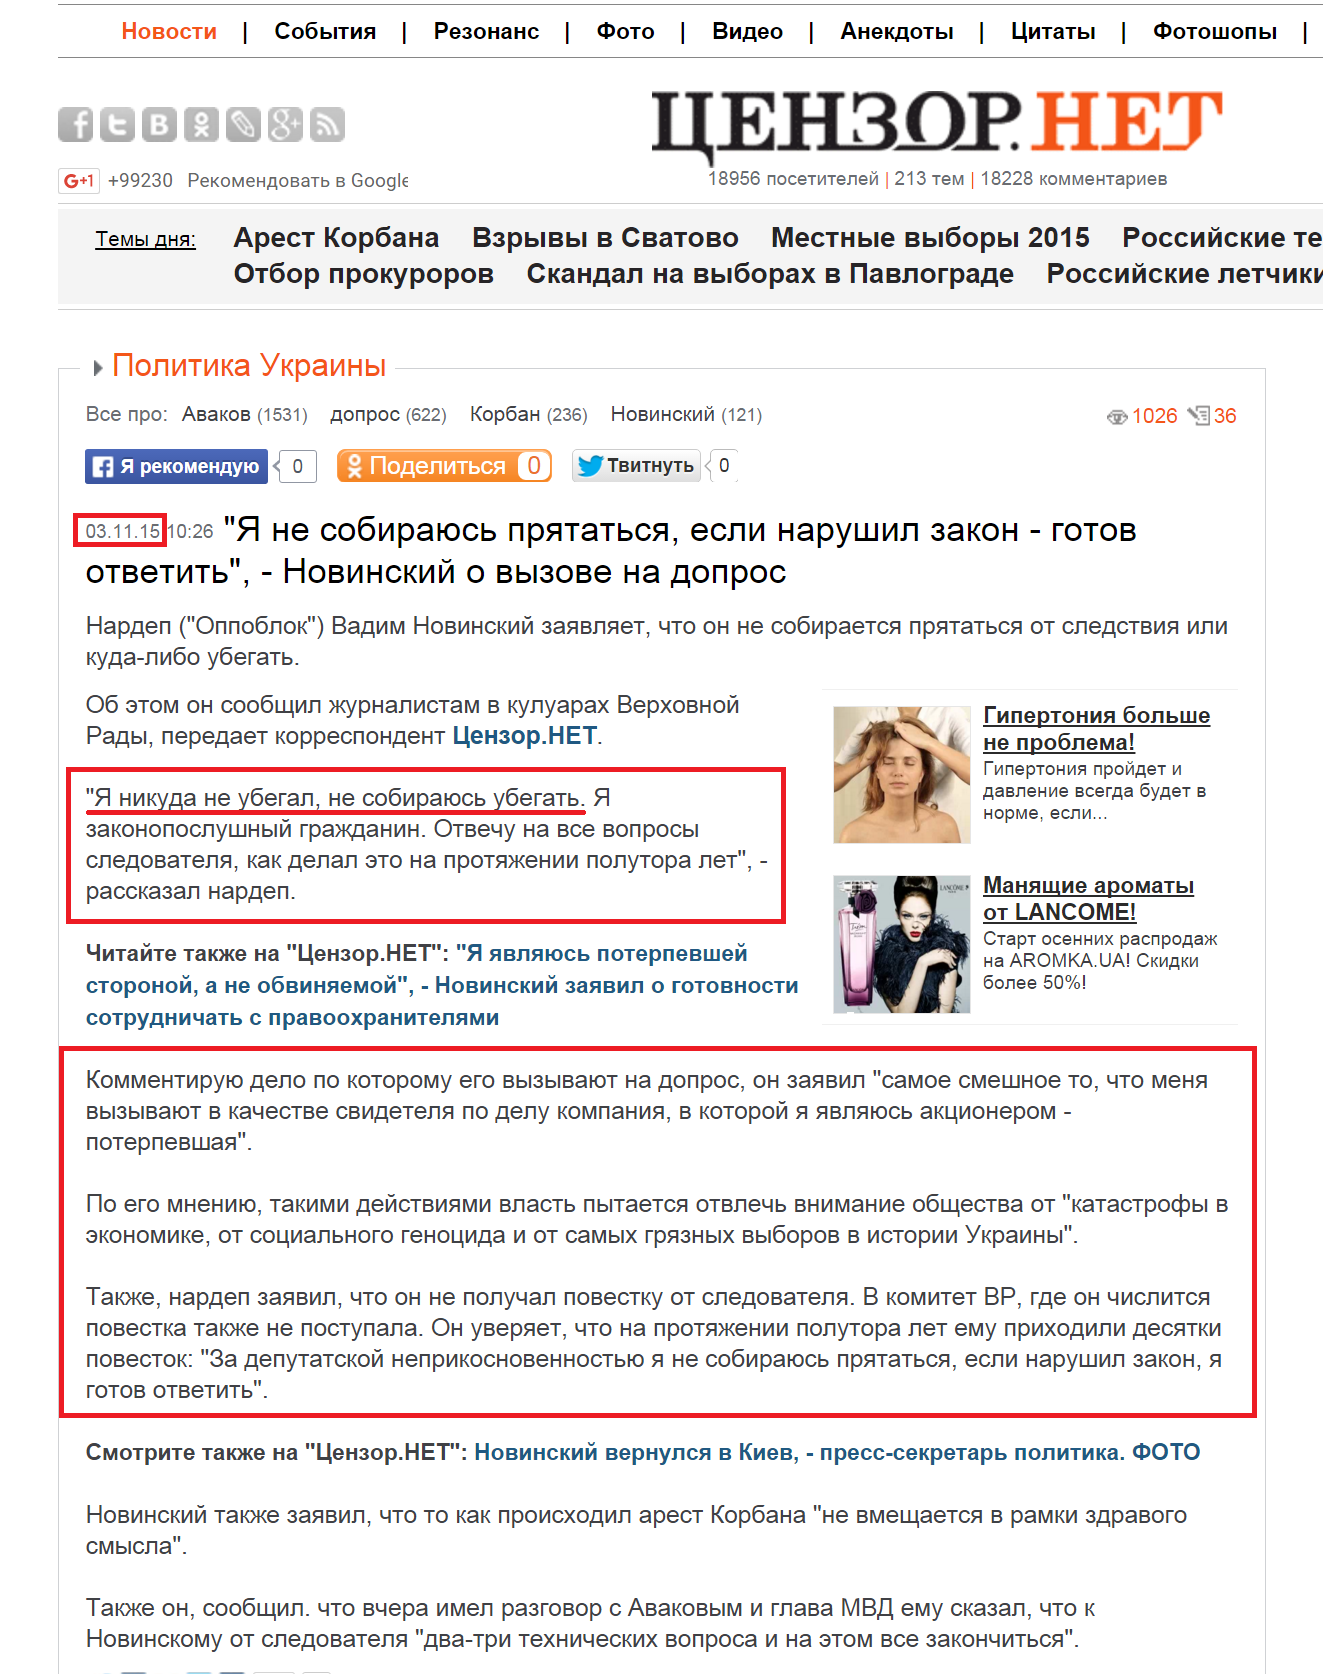 http://censor.net.ua/news/359003/ya_ne_sobirayus_pryatatsya_esli_narushil_zakon_gotov_otvetit_novinskiyi_o_vyzove_na_dopros